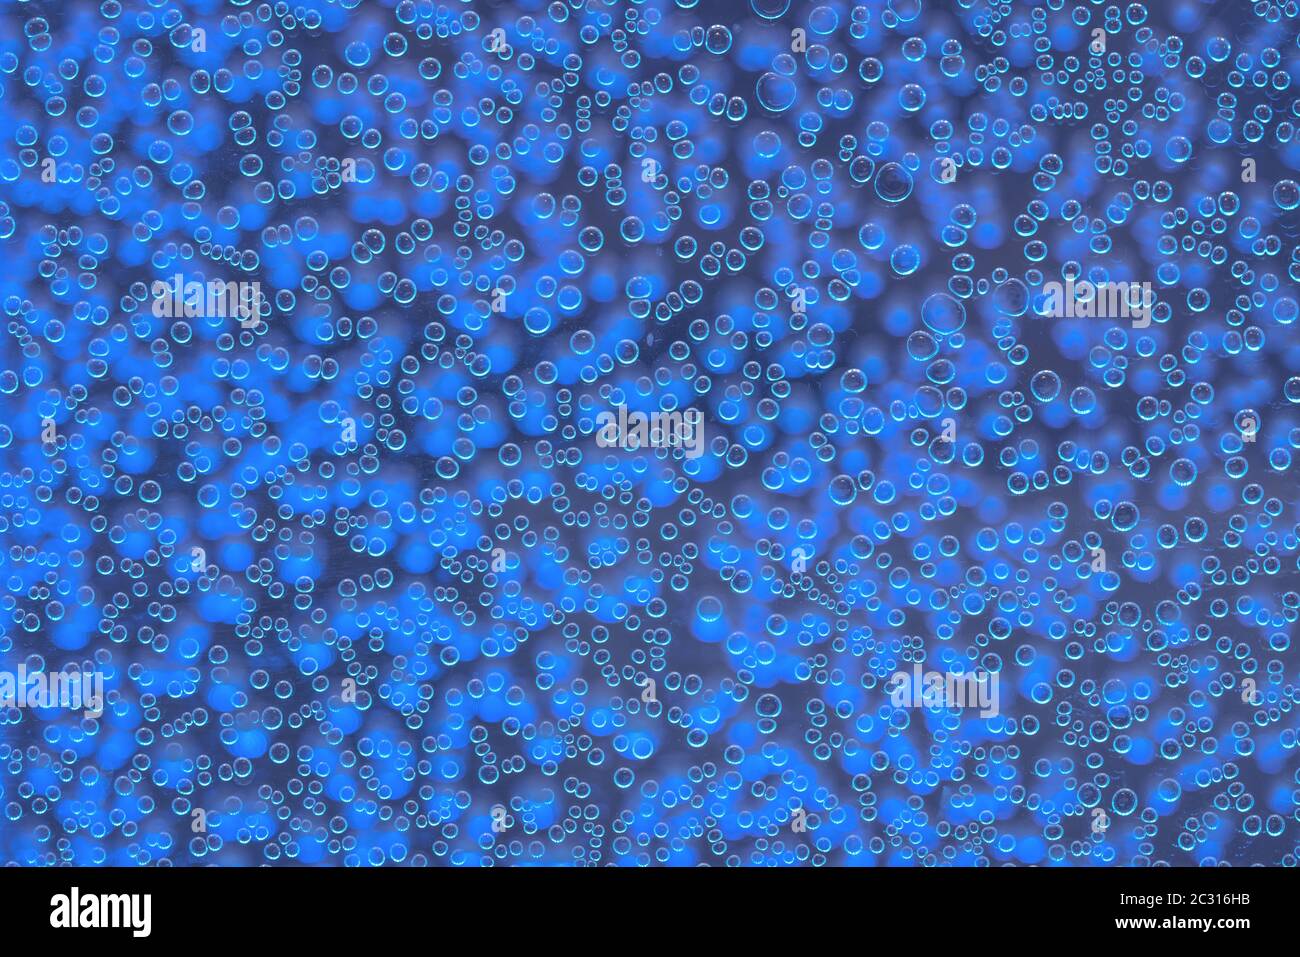 Textura muy detalladas de líquido gaseoso con chispeantes burbujas azules Foto de stock